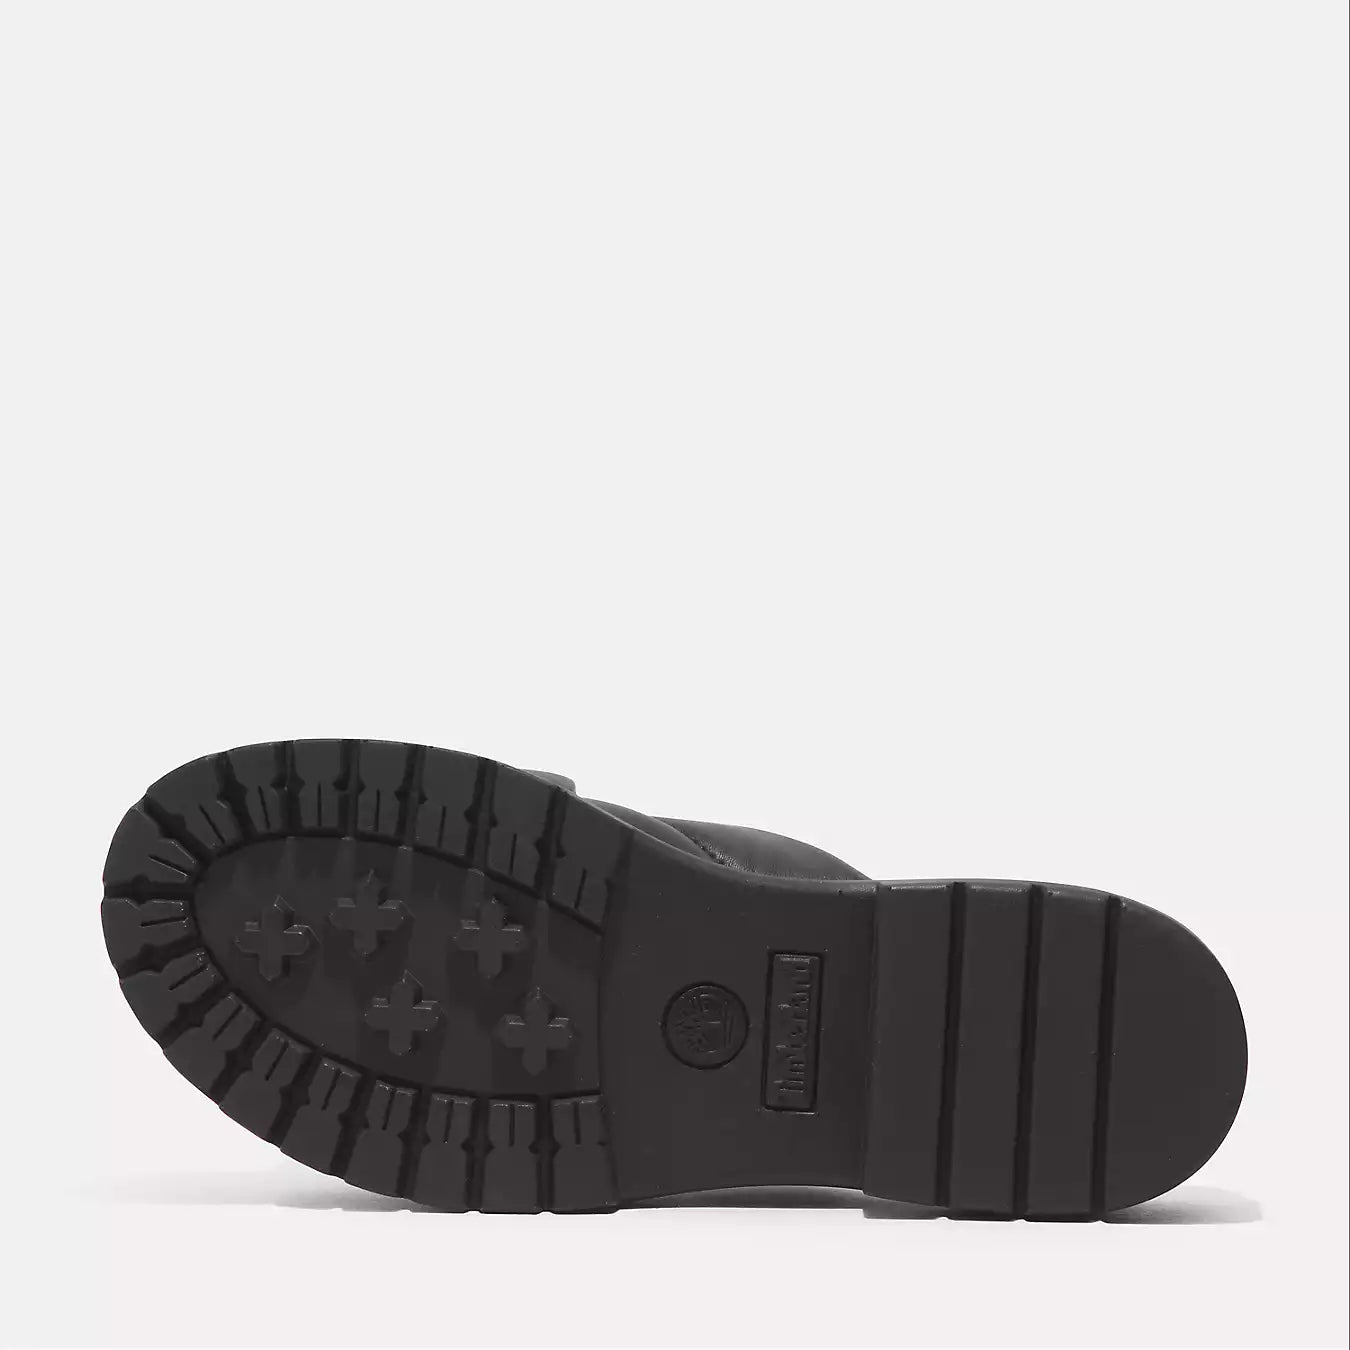 London Vibe Slide Sandal - Black Full Grain